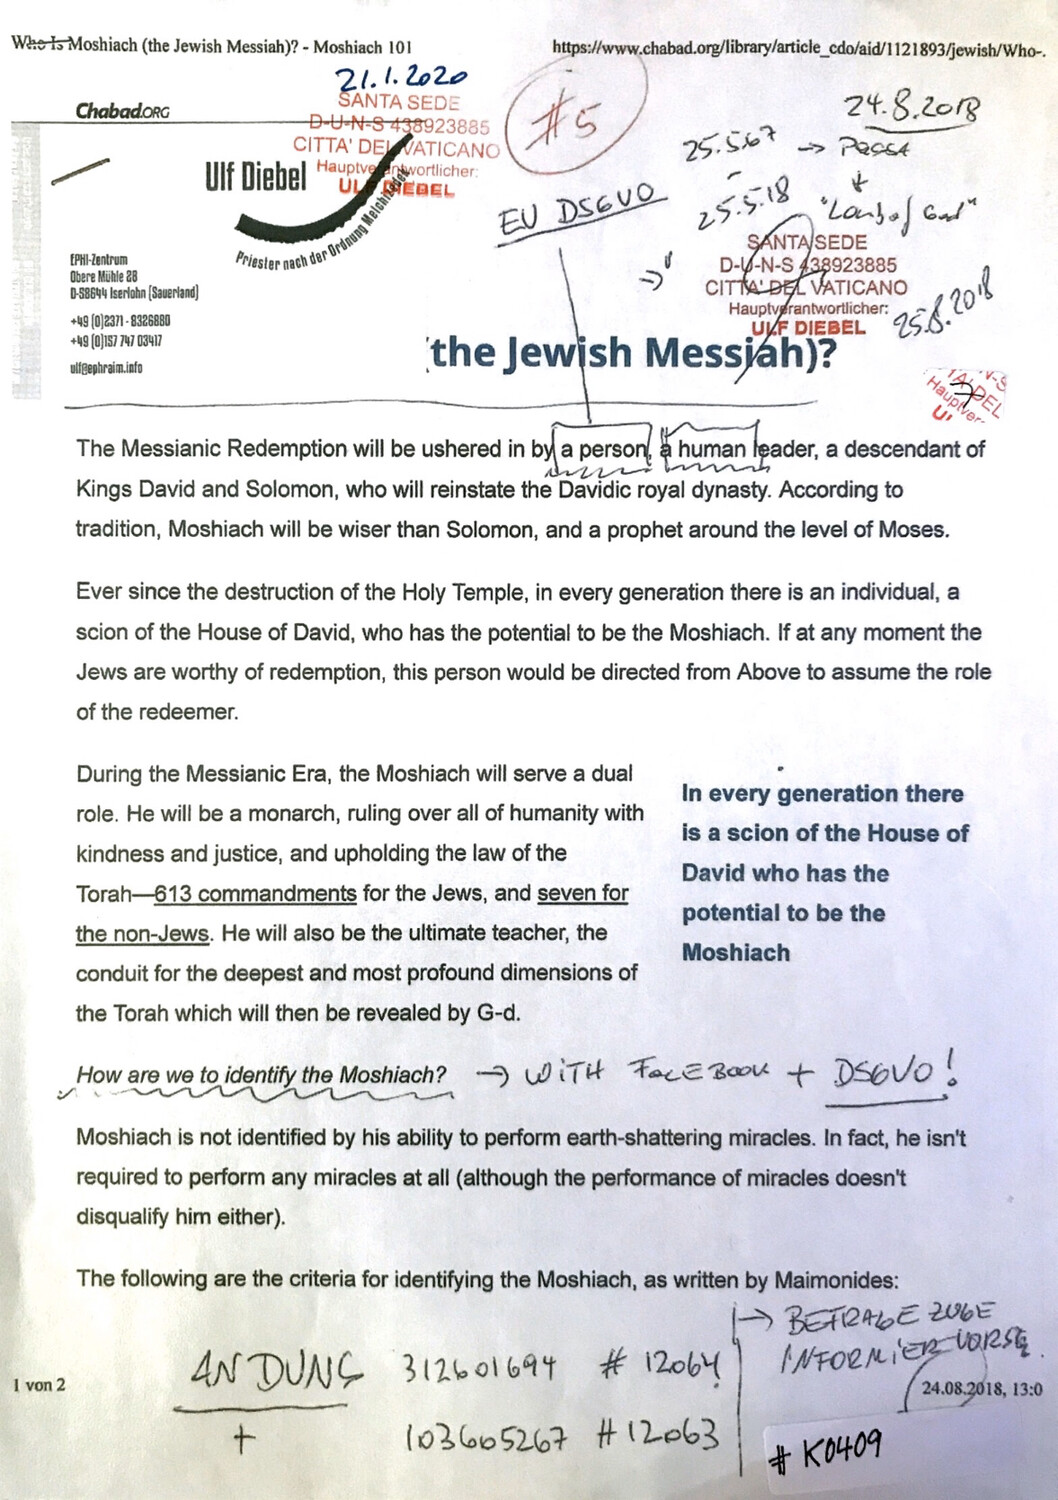 #K0409 l The Jewish Messiah? Chabad.org l Santa Seide - Hauptverantwortlicher Ulf Diebel